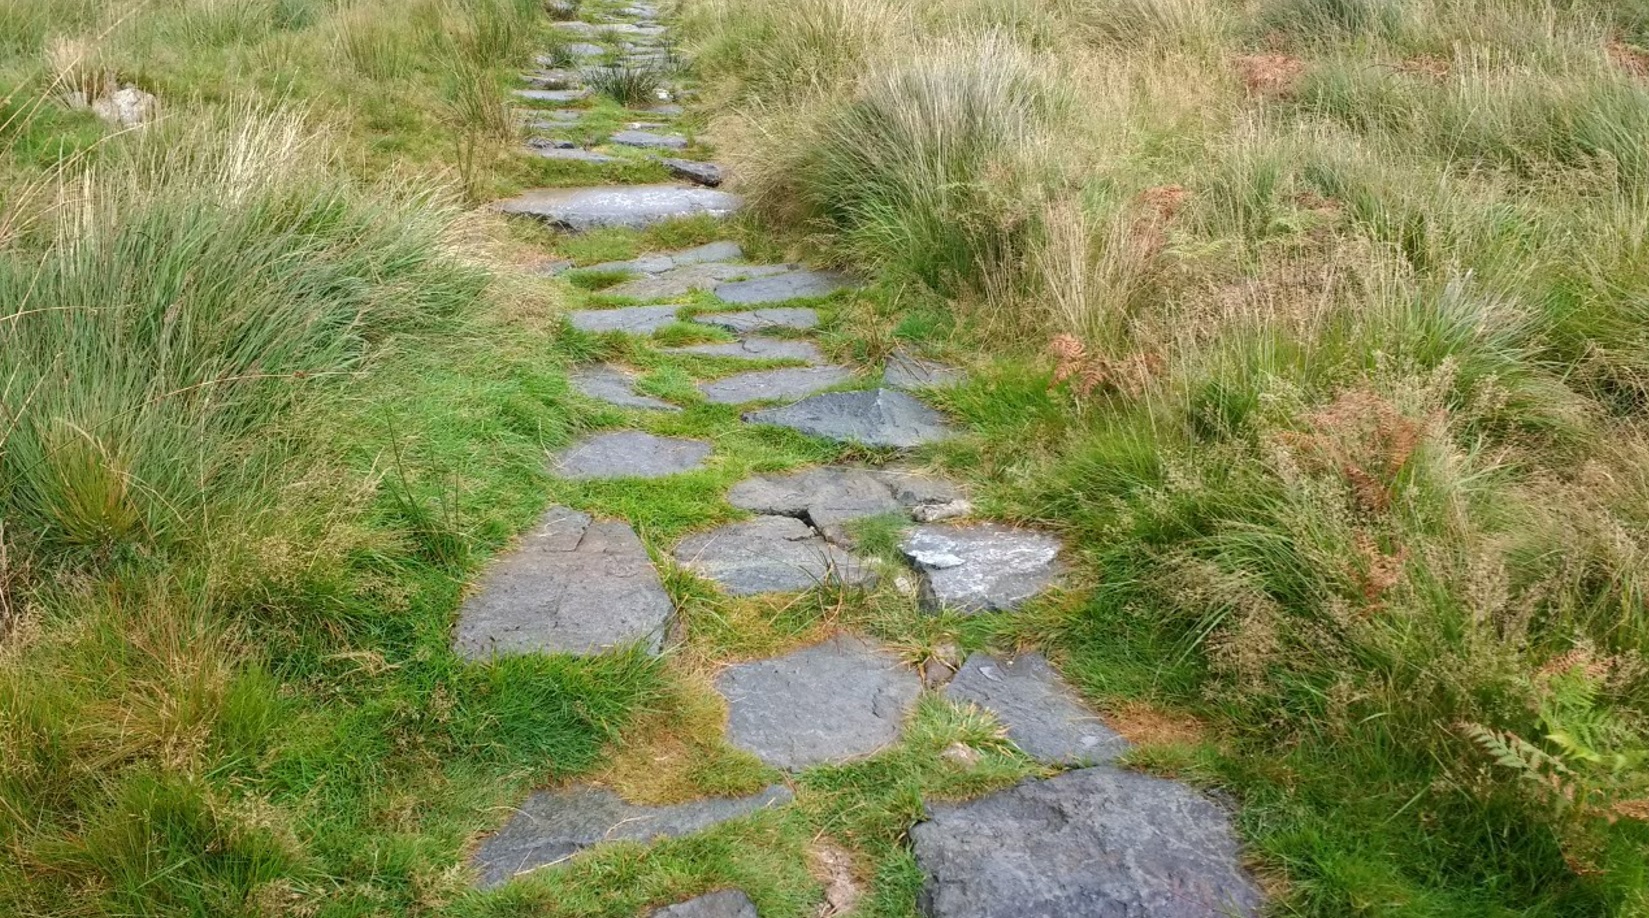 Llwybr carreg gyda gwair wedi tyfu rhwng y cerrig. Stone pitched path with grass growing between stones